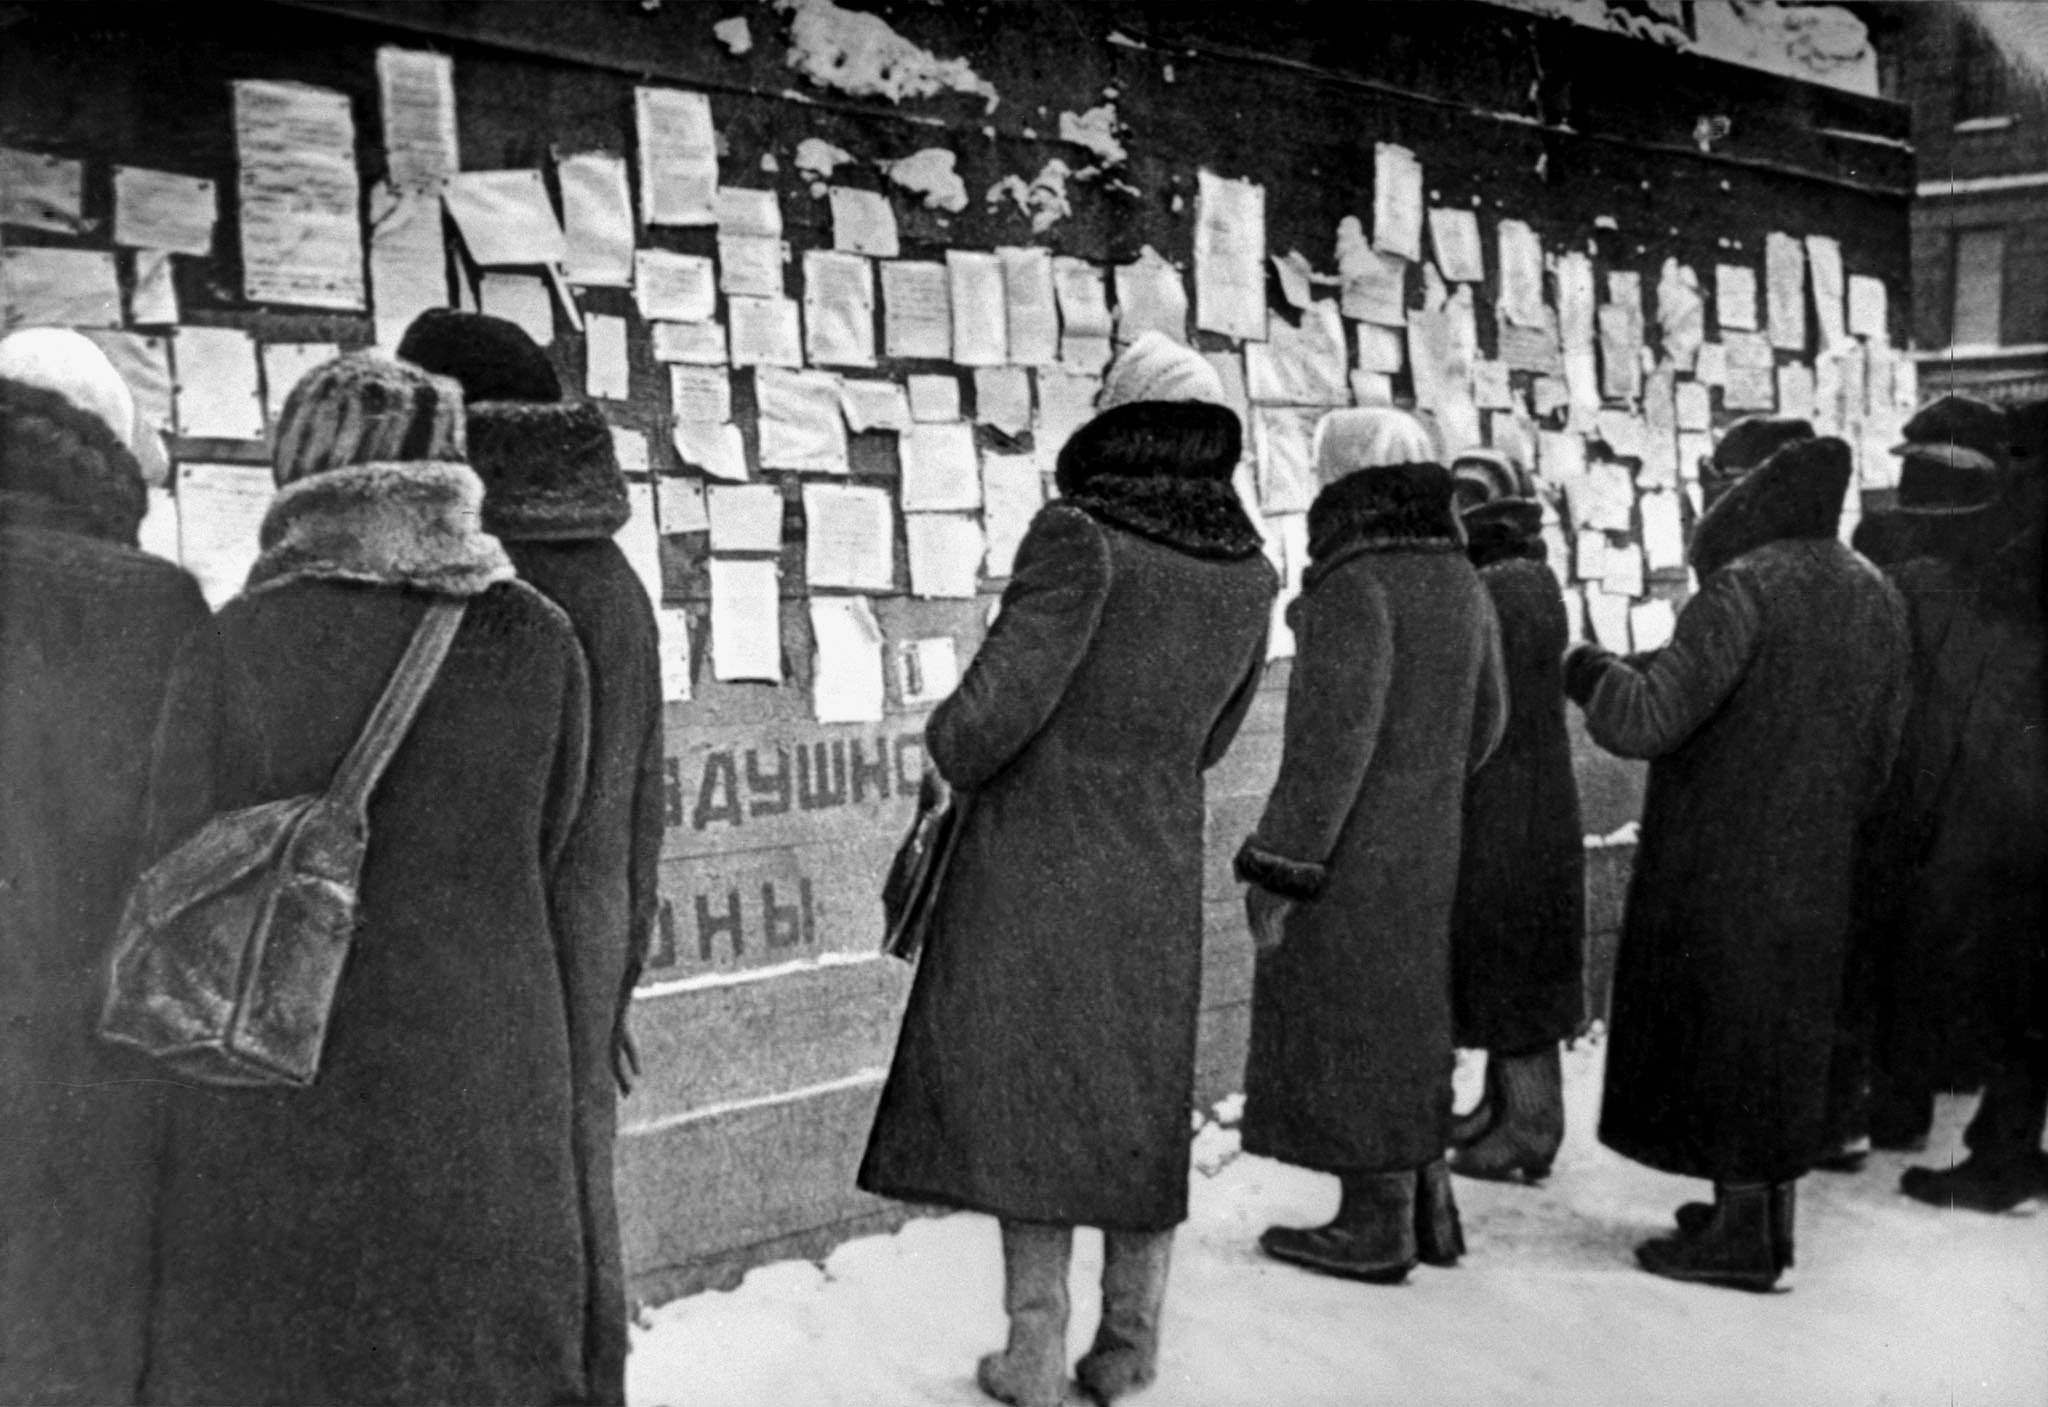 Найти блокаду. Блокадный Ленинград фотохроника. Ленинград в блокаде фото 1942.